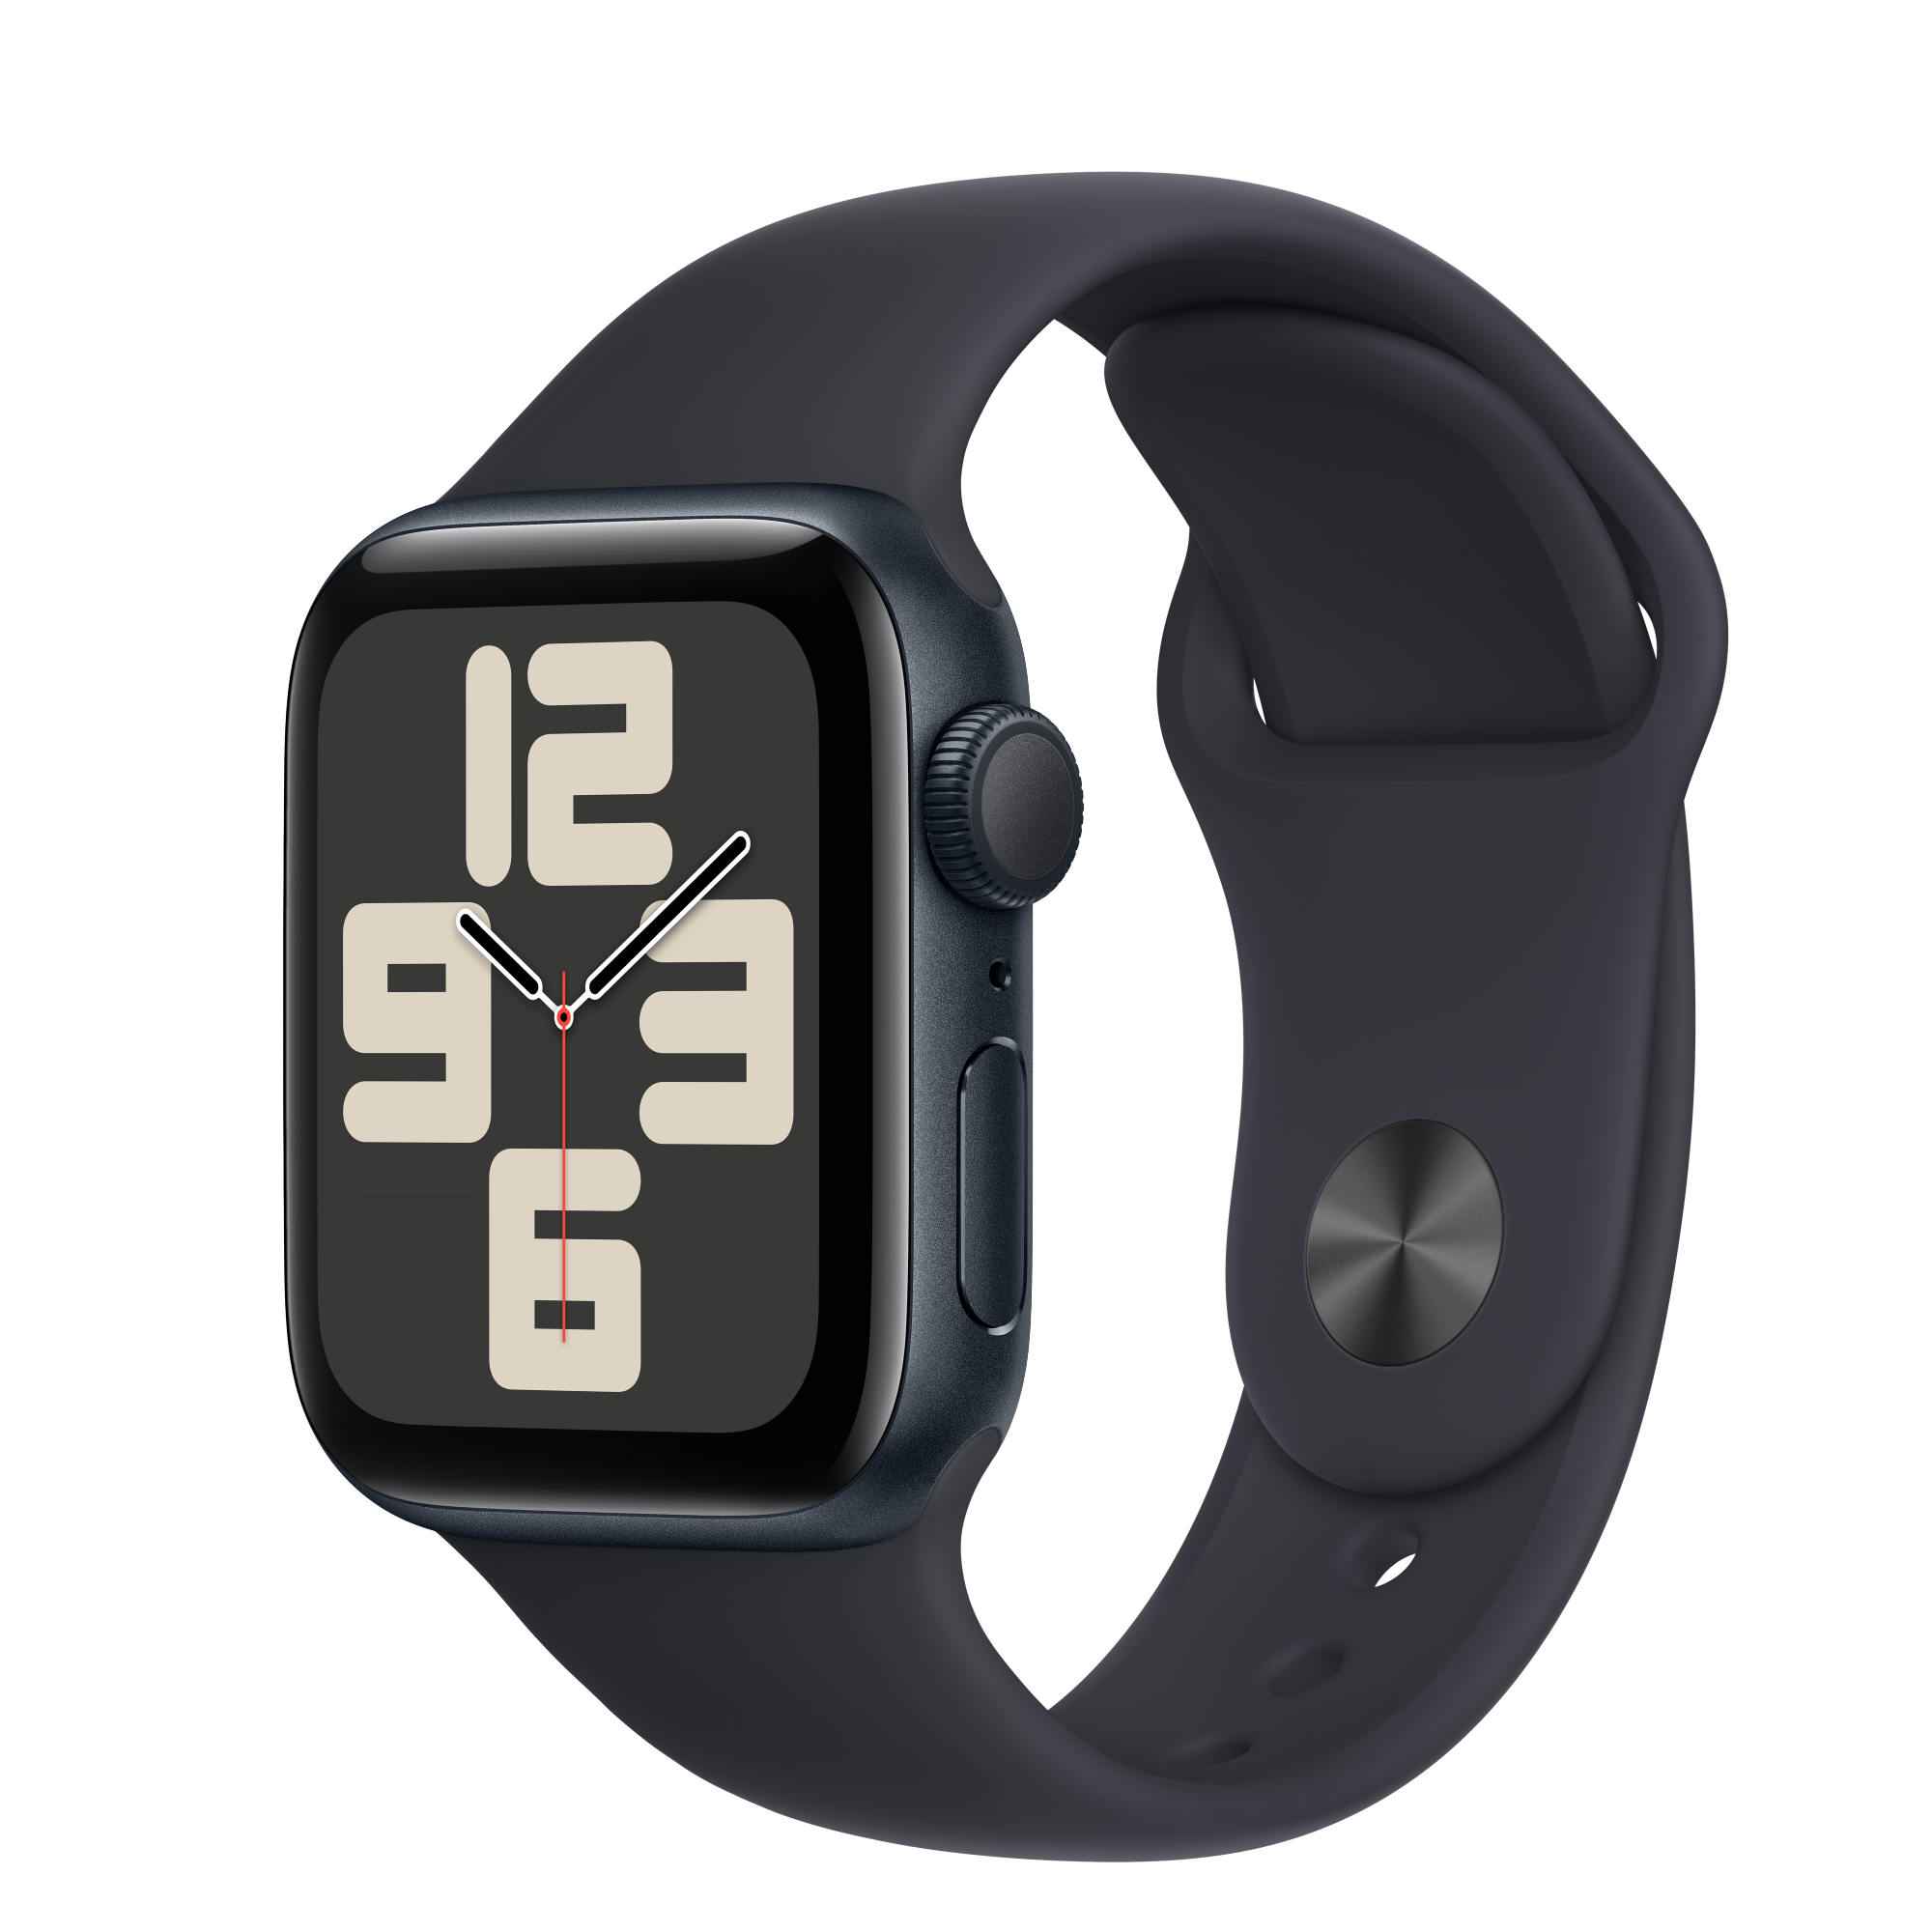 Apple Watch SE (new)(GPS)午夜色鋁金屬錶殼配午夜色運動錶帶 40mm(S/M)(MR9X3TA/A) 商品未拆未使用可以7天內申請退貨,退貨運費由買家負擔 如果拆封使用只能走維修保固,您可以再下單唷【APP下單最高22%點數回饋】